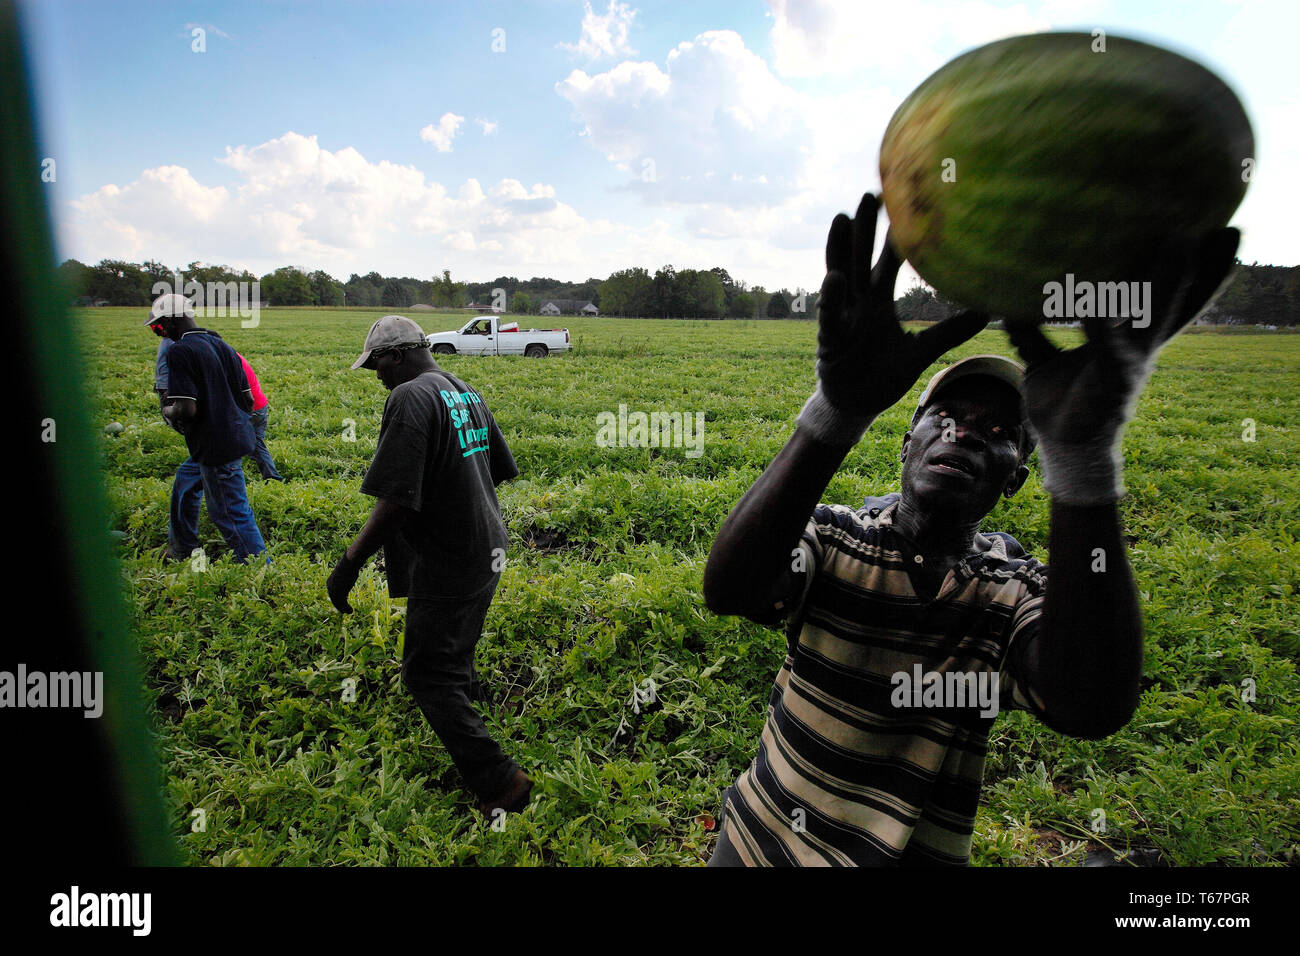 Les ouvriers agricoles saisonniers Les melons d'eau de la récolte à la ferme dans la région de Niles Daren Janoswski. Janoswski est un investisseur s'agriculteur. Il a commencé à investir dans des terres agricoles et fini par agriculteur à temps plein/ investisseur. Banque D'Images